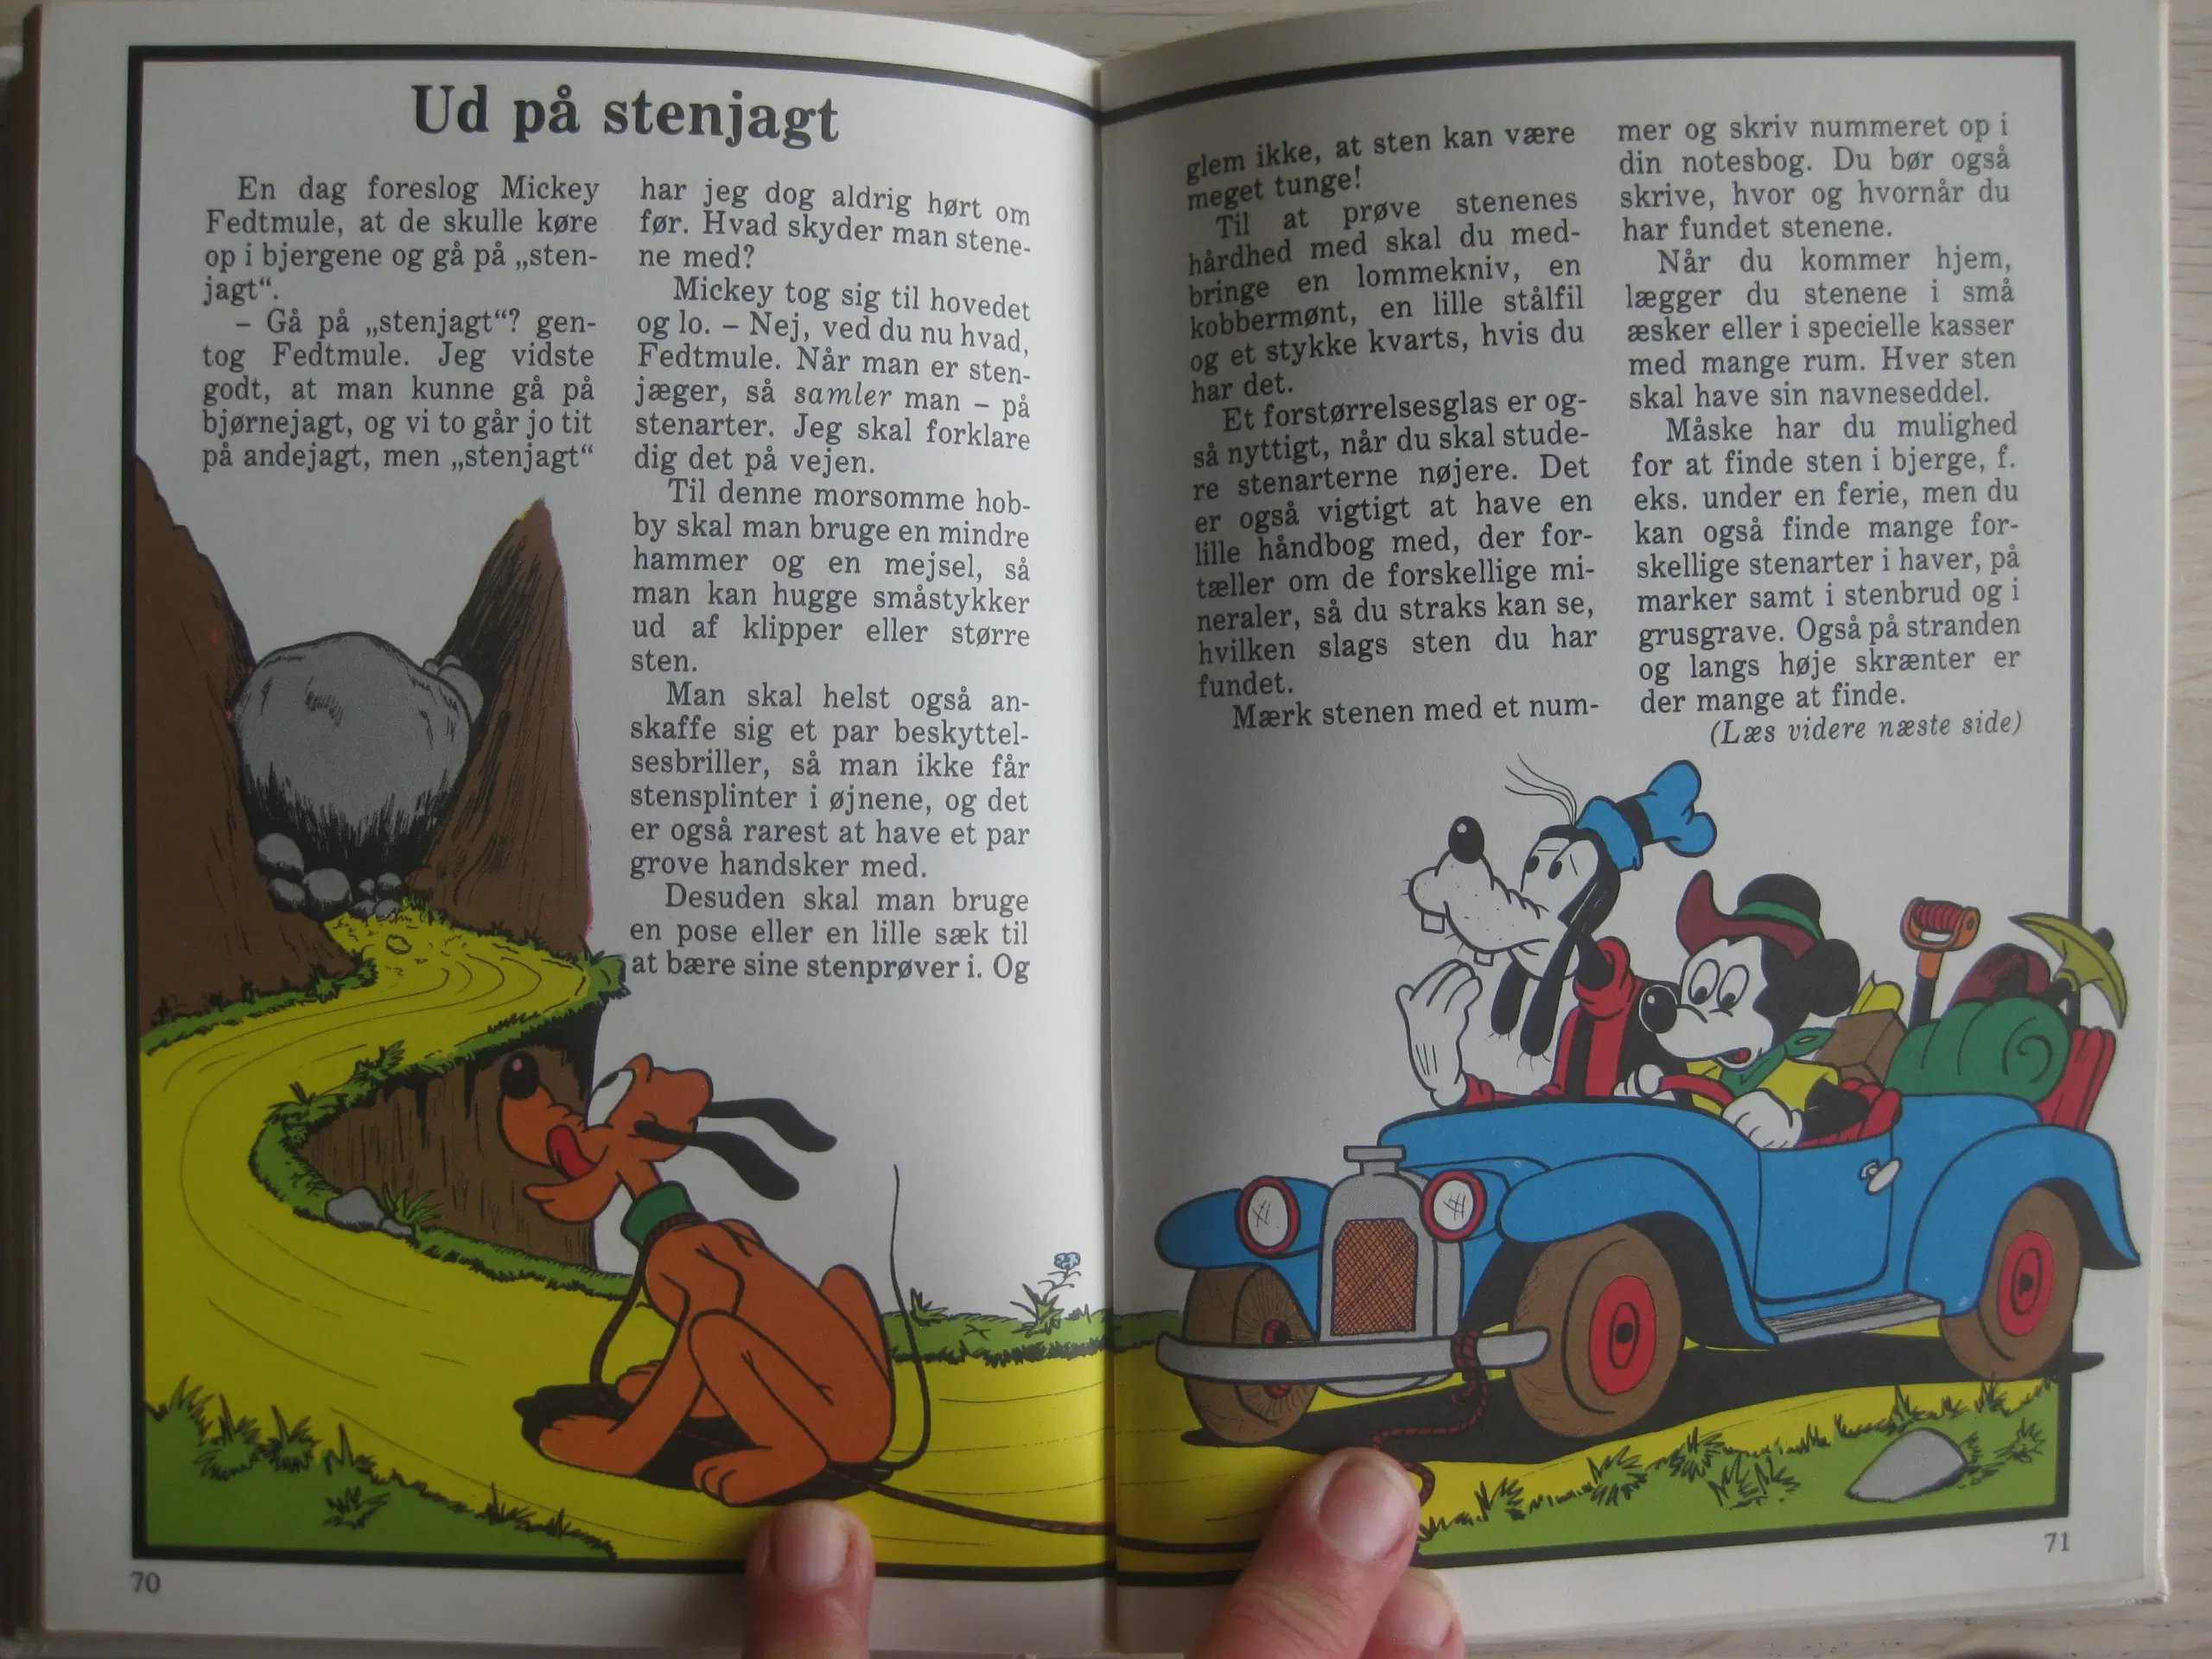 Idébøger for børn - Walt Disney ;-)